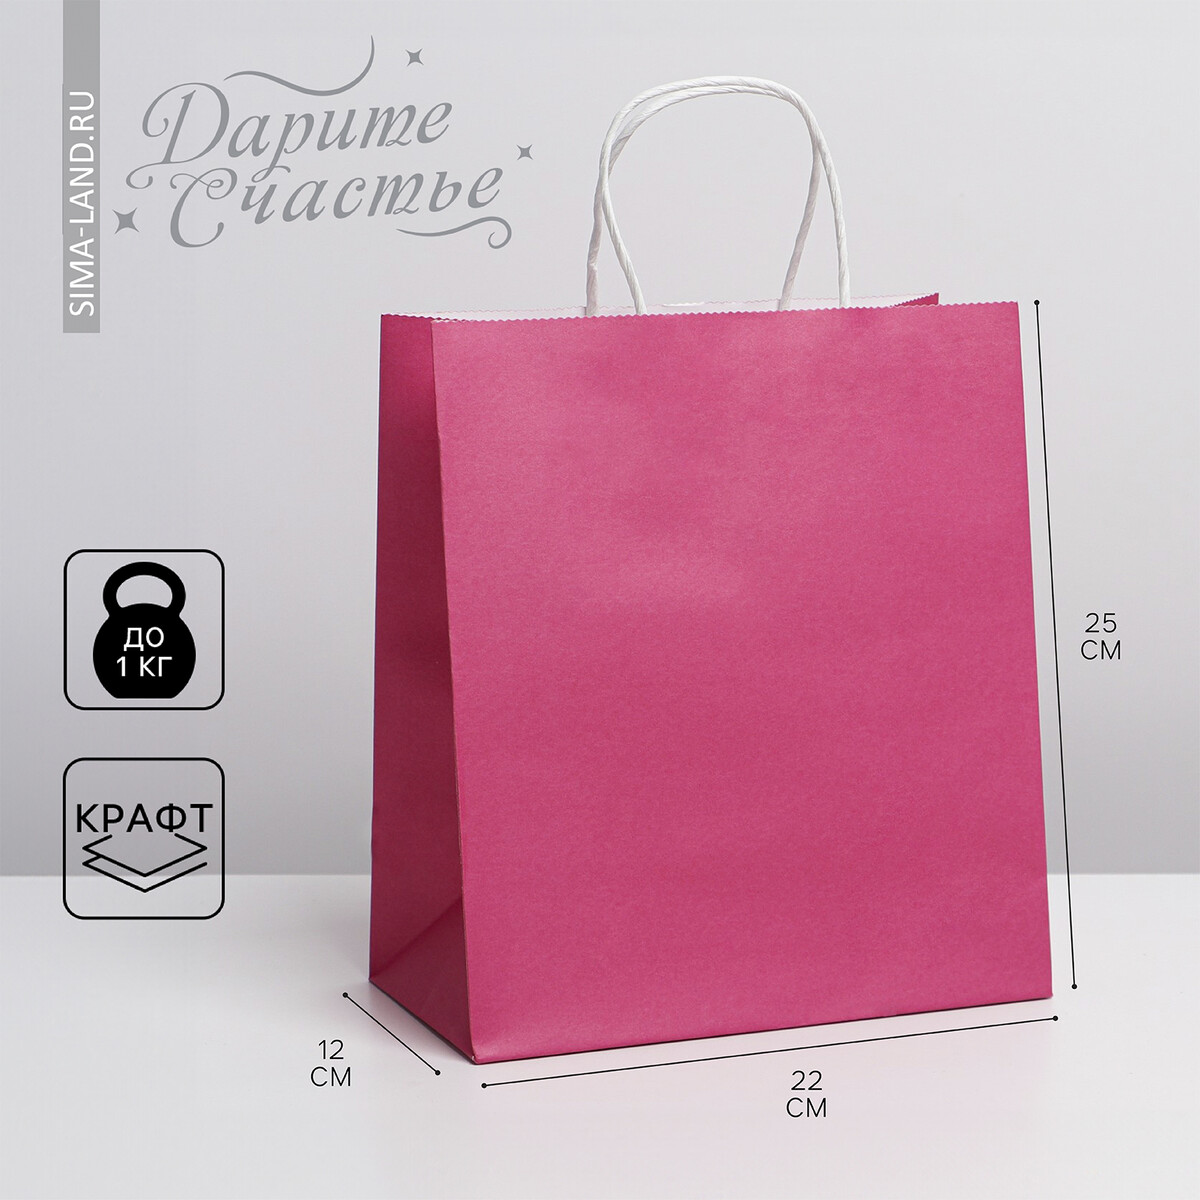 Пакет подарочный крафтовый, упаковка, pink, 22 х 25 х 12 см наушники perfeo alto pink pf c3188 b